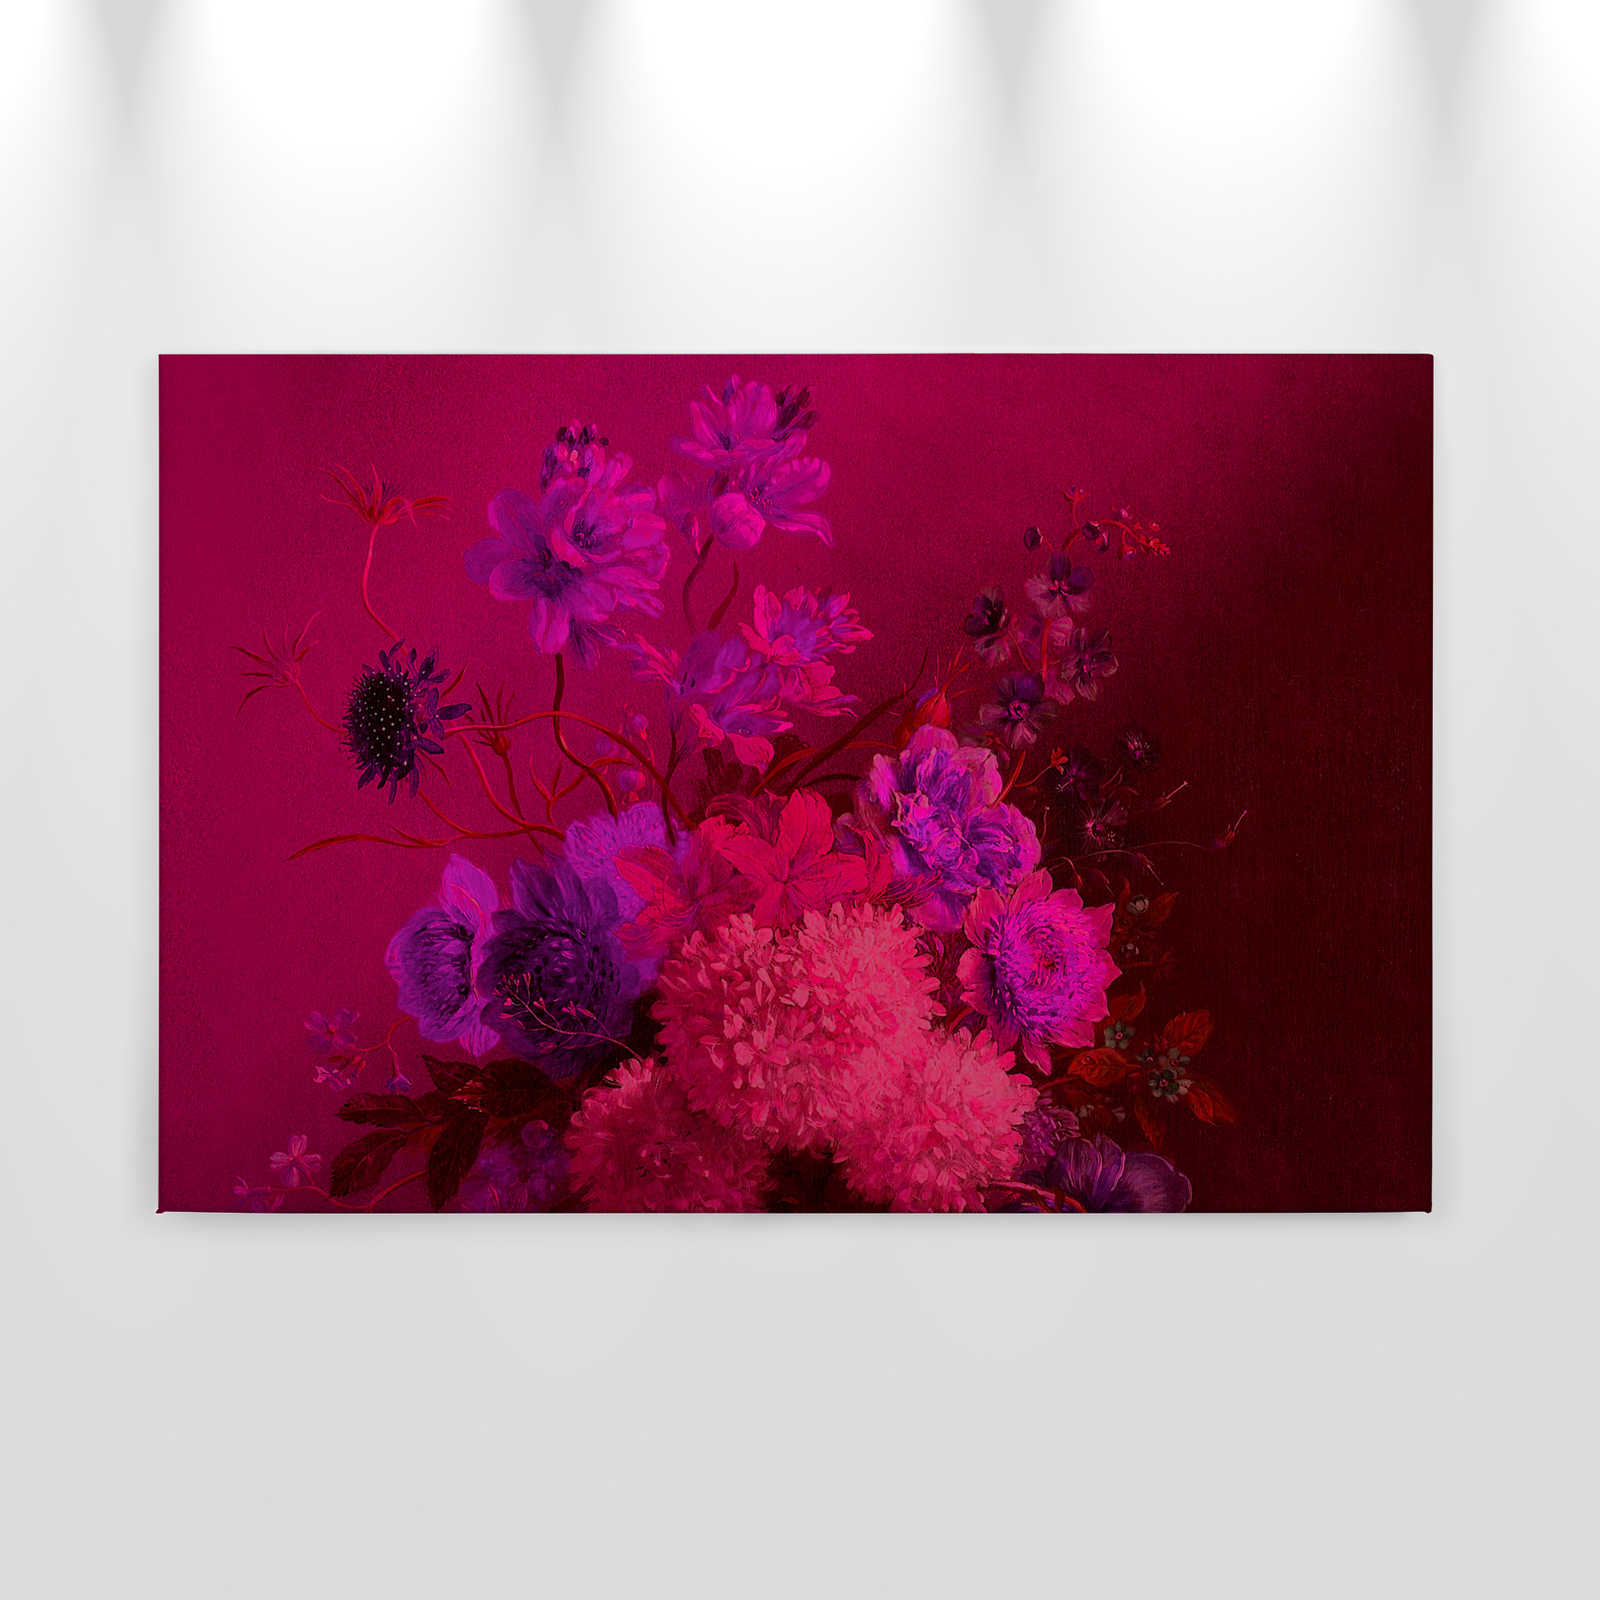             Neon Leinwandbild mit Blumen Stillleben | Bouquet Vibran 2 – 0,90 m x 0,60 m
        